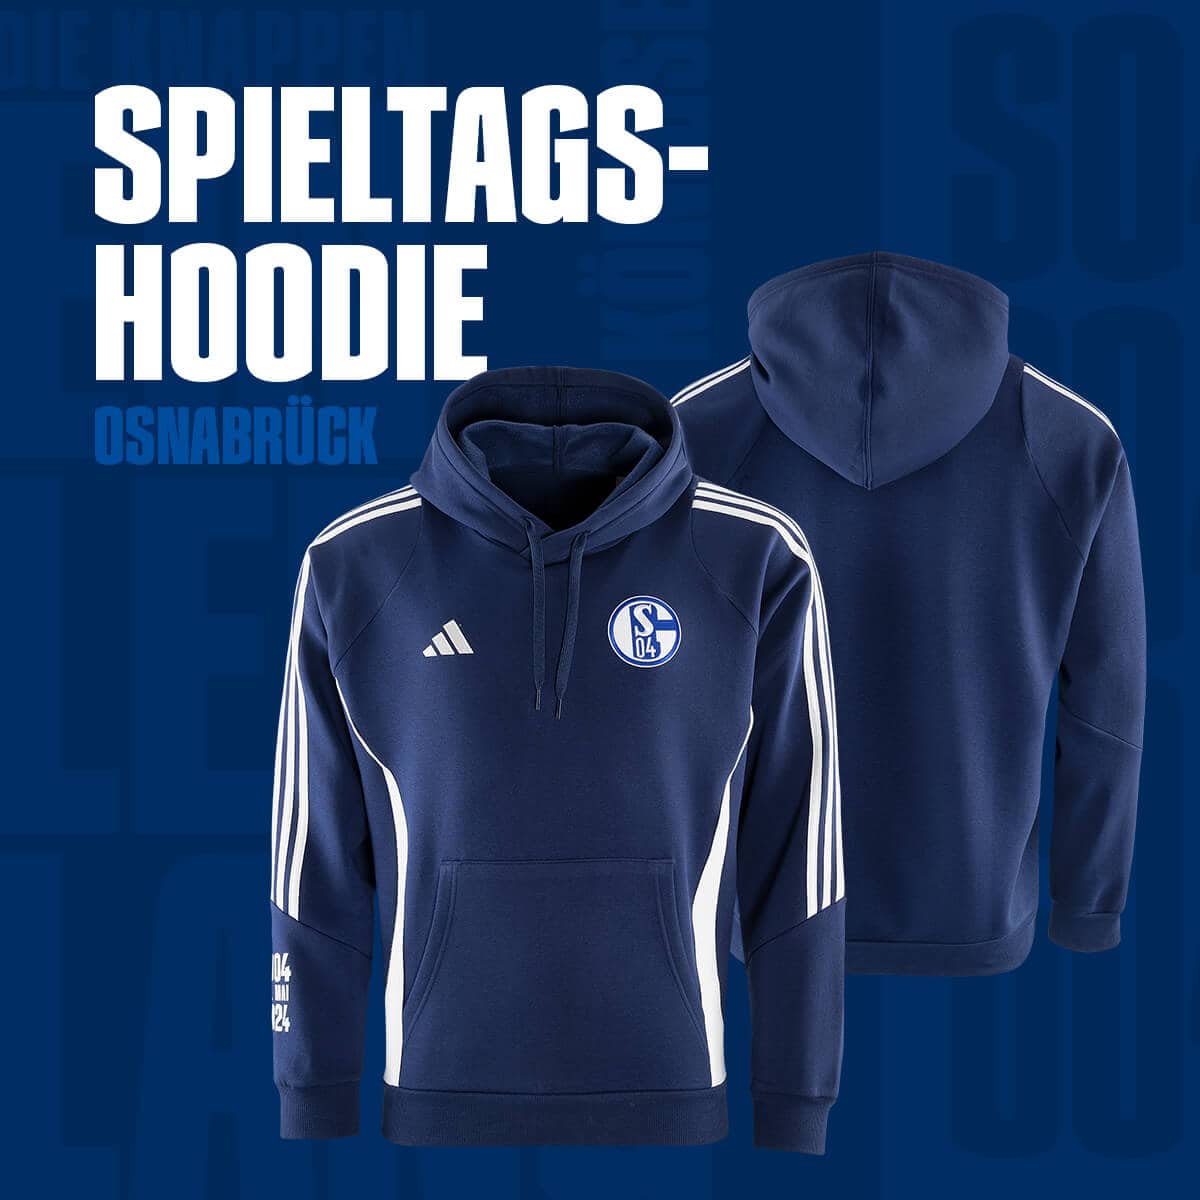 Spieltagshoodie adidas FC Schalke 04